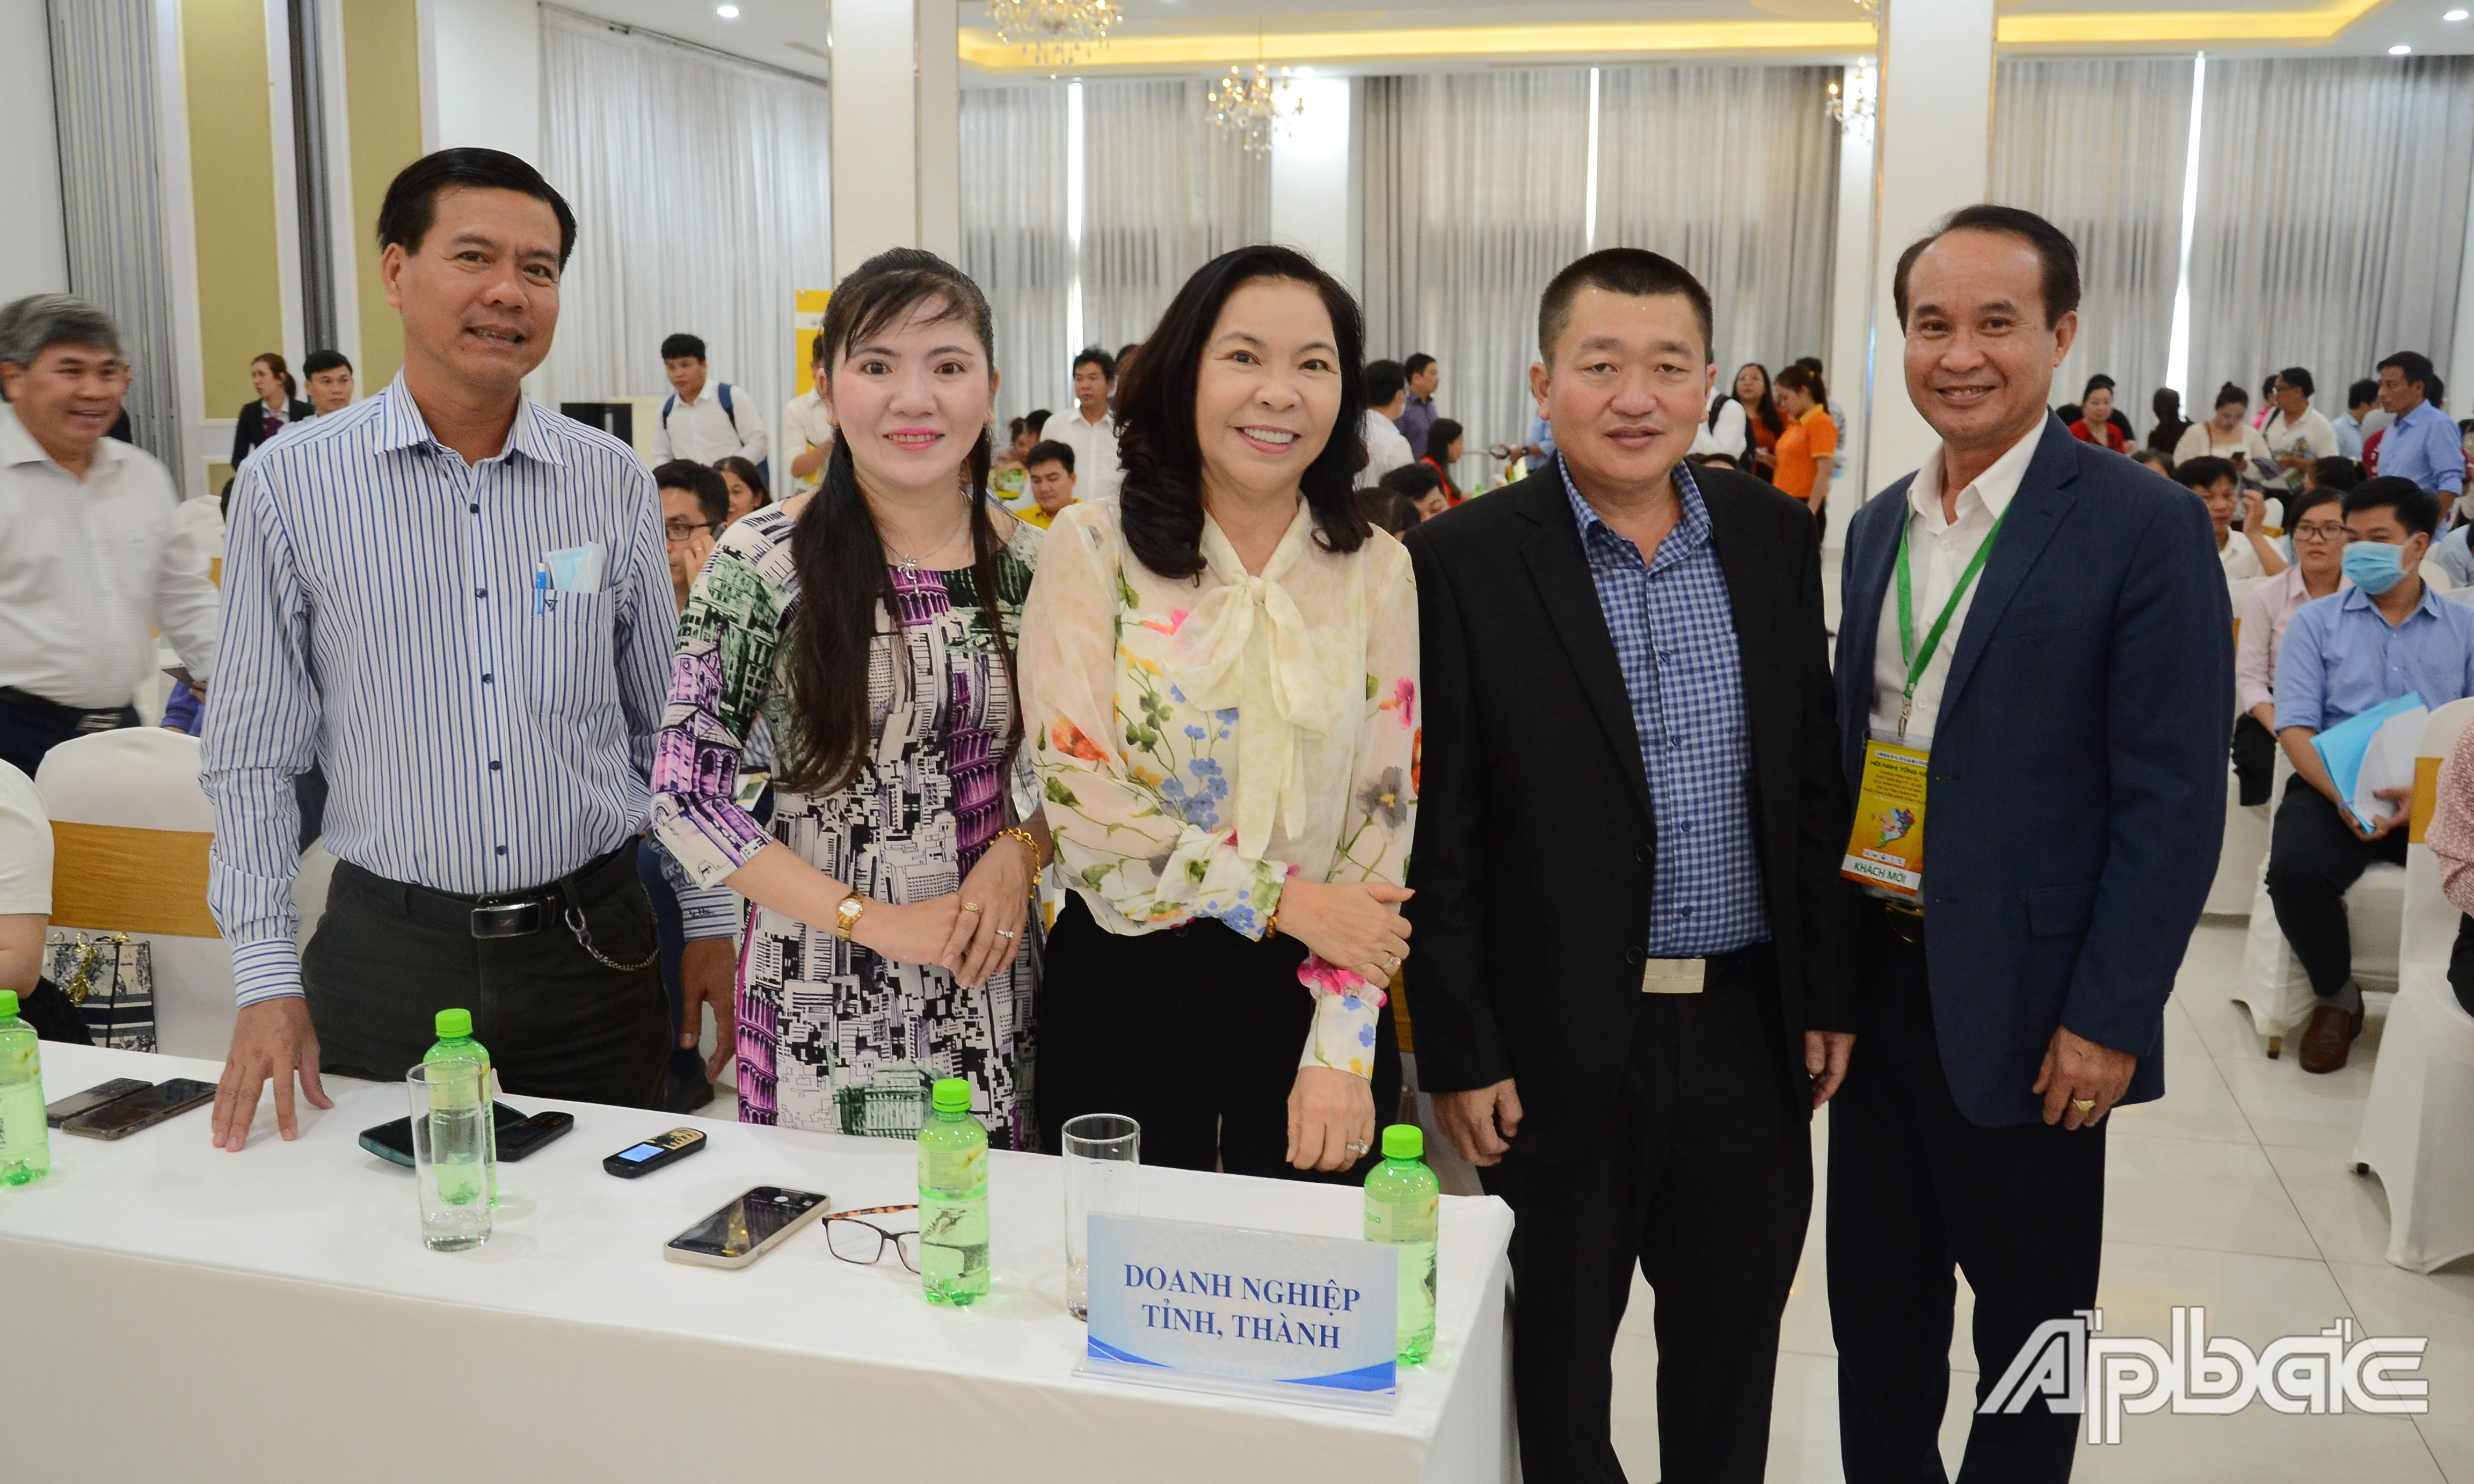 DN tỉnh Tiền Giang tham gia hội nghị.